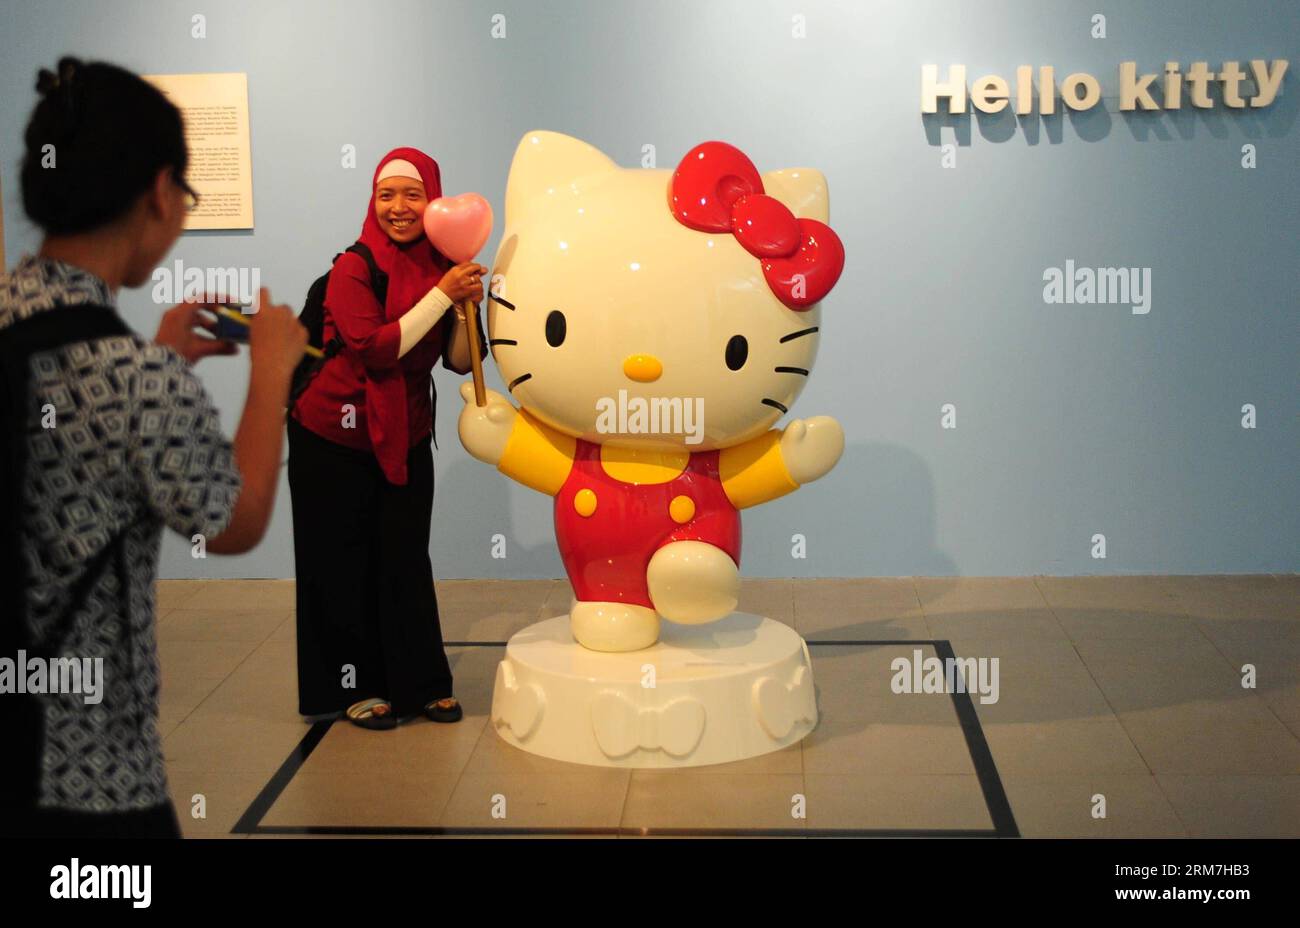 (140304) -- JAKARTA, (Xinhua) -- Eine Frau posiert für Fotos neben einer Karikaturfigur während der japanischen Pop-Culture-Charaktere-Ausstellung in Jakarta, Indonesien, 4. März 2014. Die Ausstellung findet vom 4. Bis 23. März statt. (Xinhua/Zulkarnain) INDONESIEN-JAKARTA-AUSSTELLUNG-JAPAN PUBLICATIONxNOTxINxCHN Jakarta XINHUA eine Frau posiert für Fotos neben einer Cartoon-Figur während der japanischen Pop-Kultur-Charaktere-Ausstellung in Jakarta Indonesien 4. März 2014 die Ausstellung IST Held vom 4. März bis 23. März XINHUA Indonesien Jakarta Ausstellung Japan PUBLICATIONxNOTxINxCHN Stockfoto